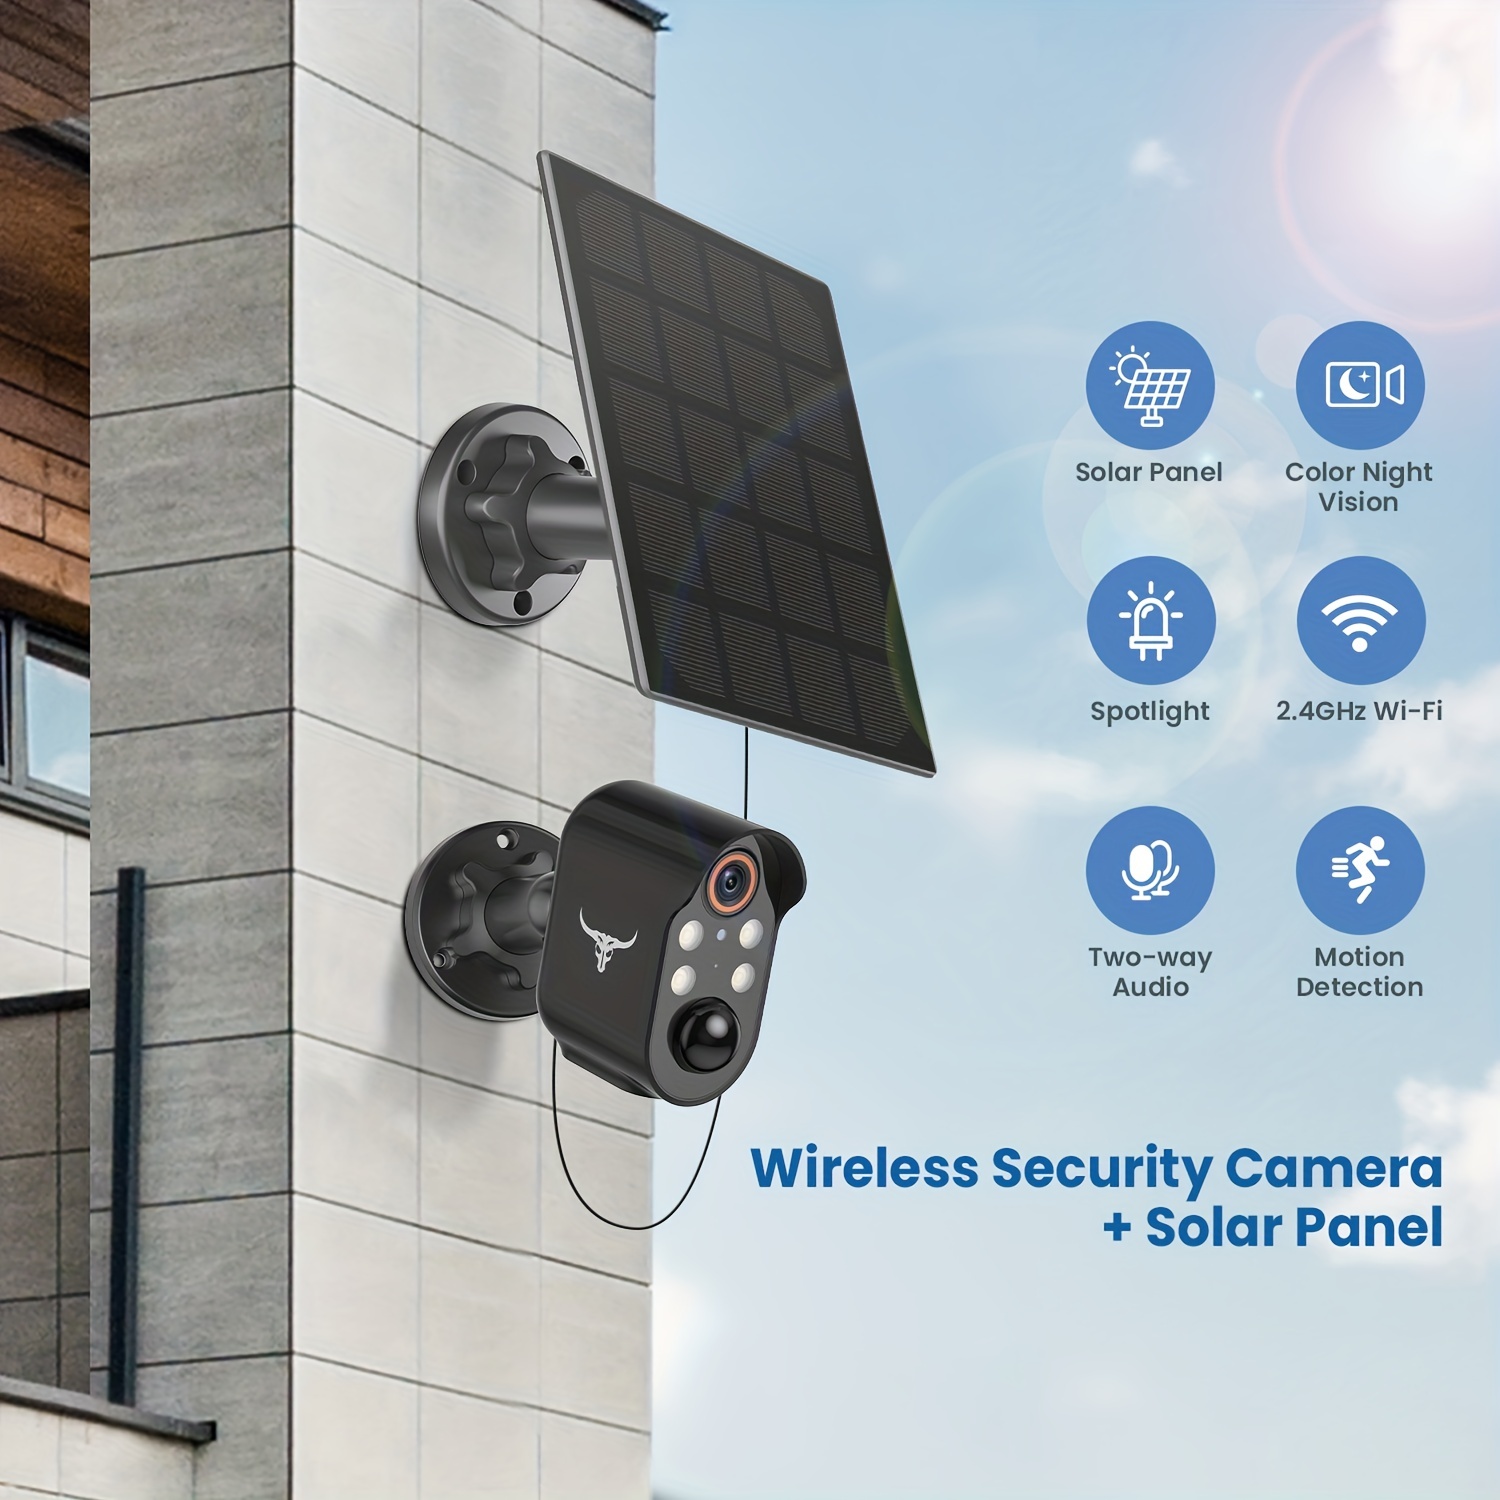 Caméra de surveillance solaire pour l'extérieur, Caméra de sécurité sans fil  pour l'extérieur avec panneau solaire, Caméra WiFi à piles, Caméra solaire  HD pour l'extérieur avec vision nocturne en couleur, Détection PIR